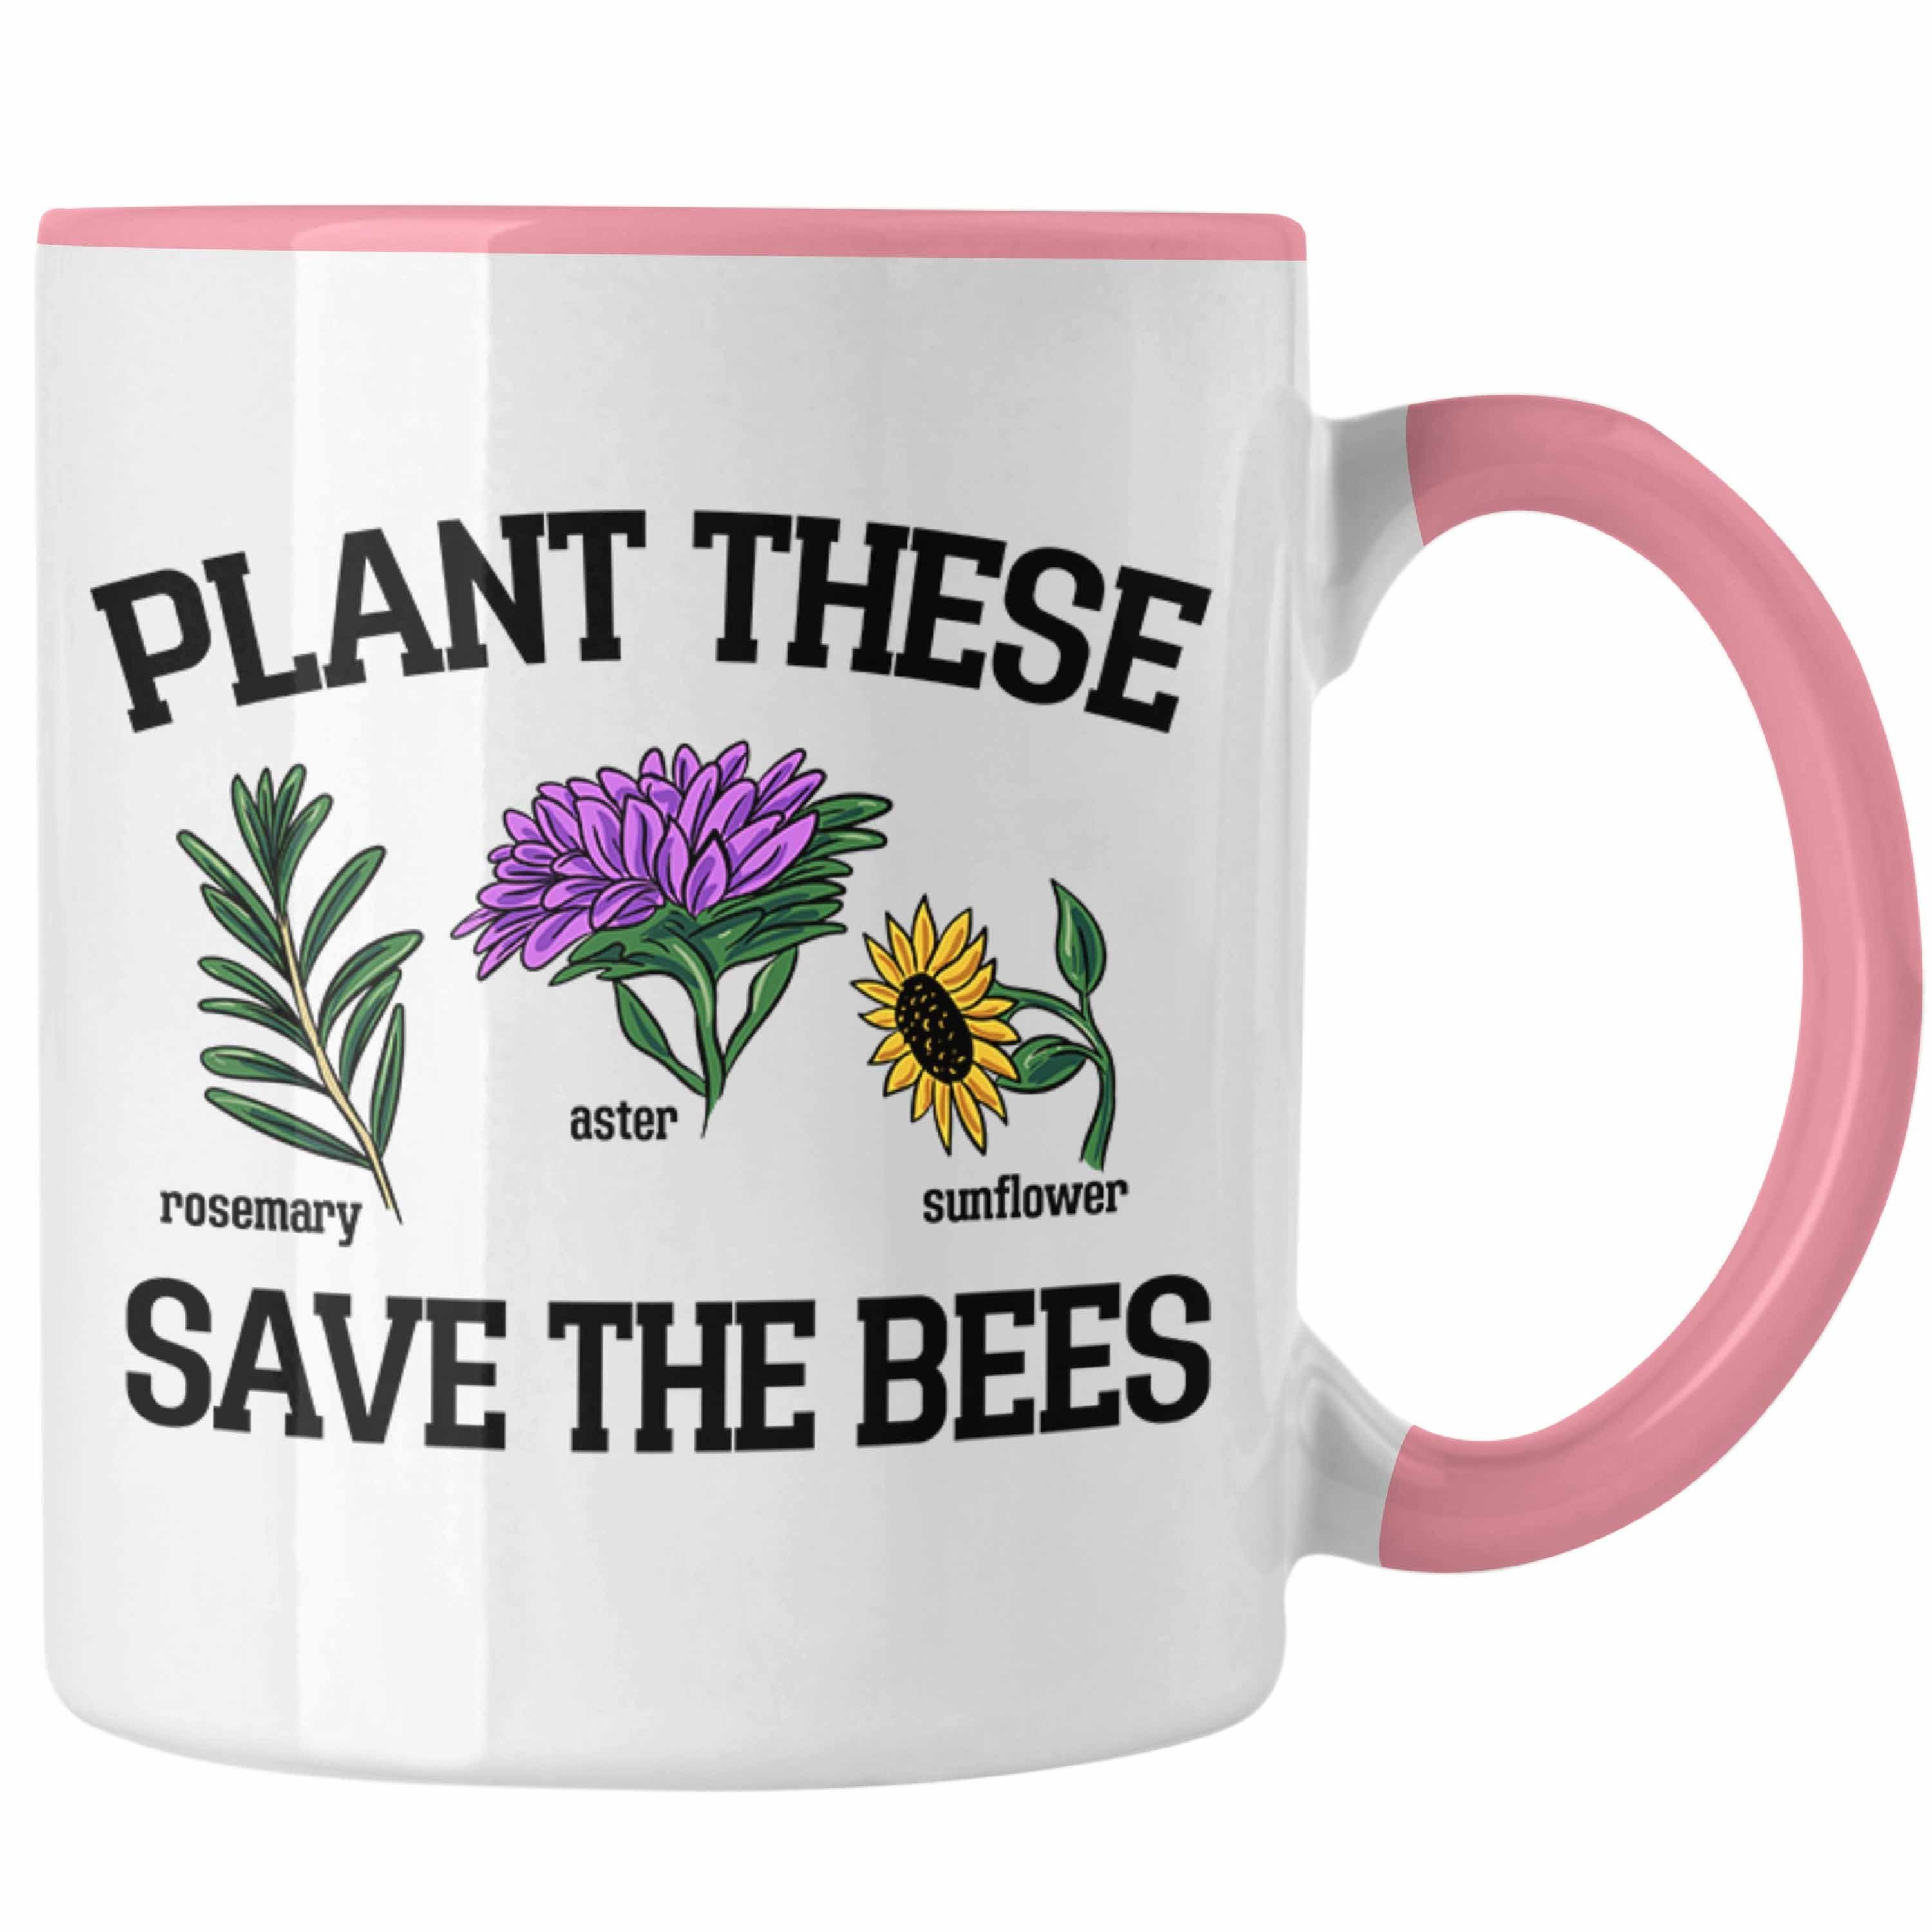 Trendation Tasse Lustige Tasse für Bienenliebhaber Plant These Save The Bees Geschenk Rosa